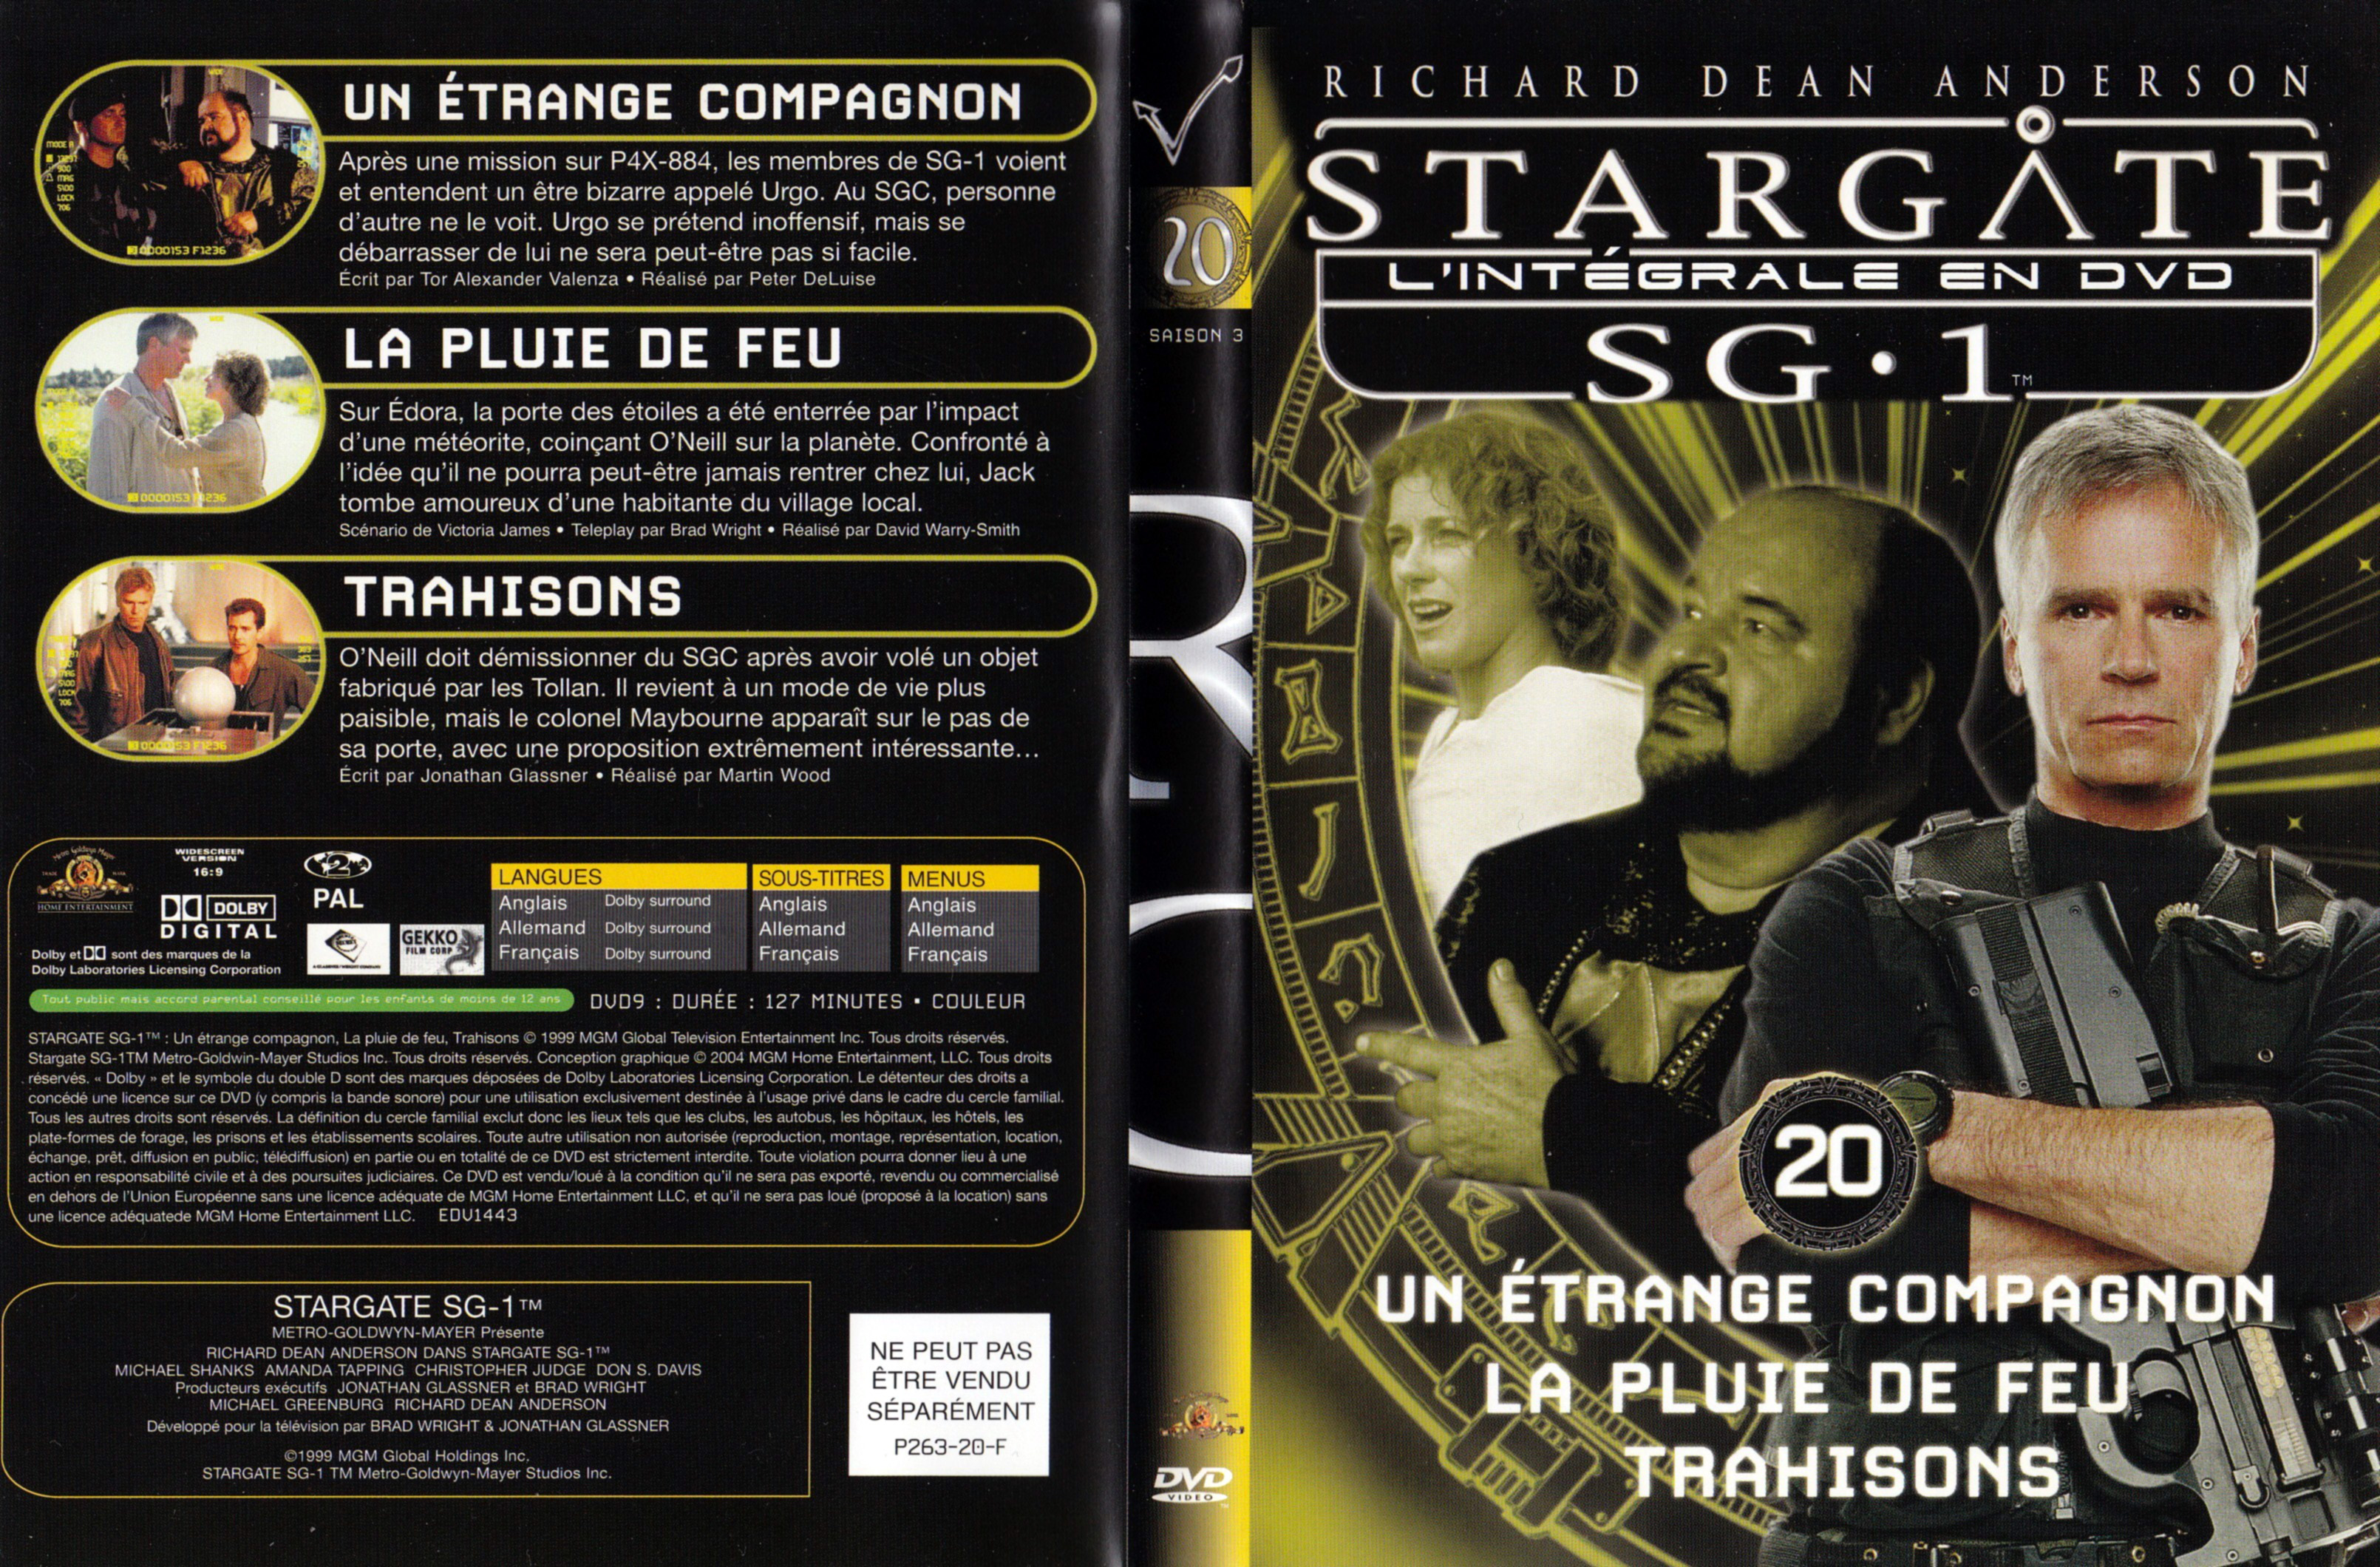 Jaquette DVD Stargate SG1 Intgrale Saison 3 vol 20